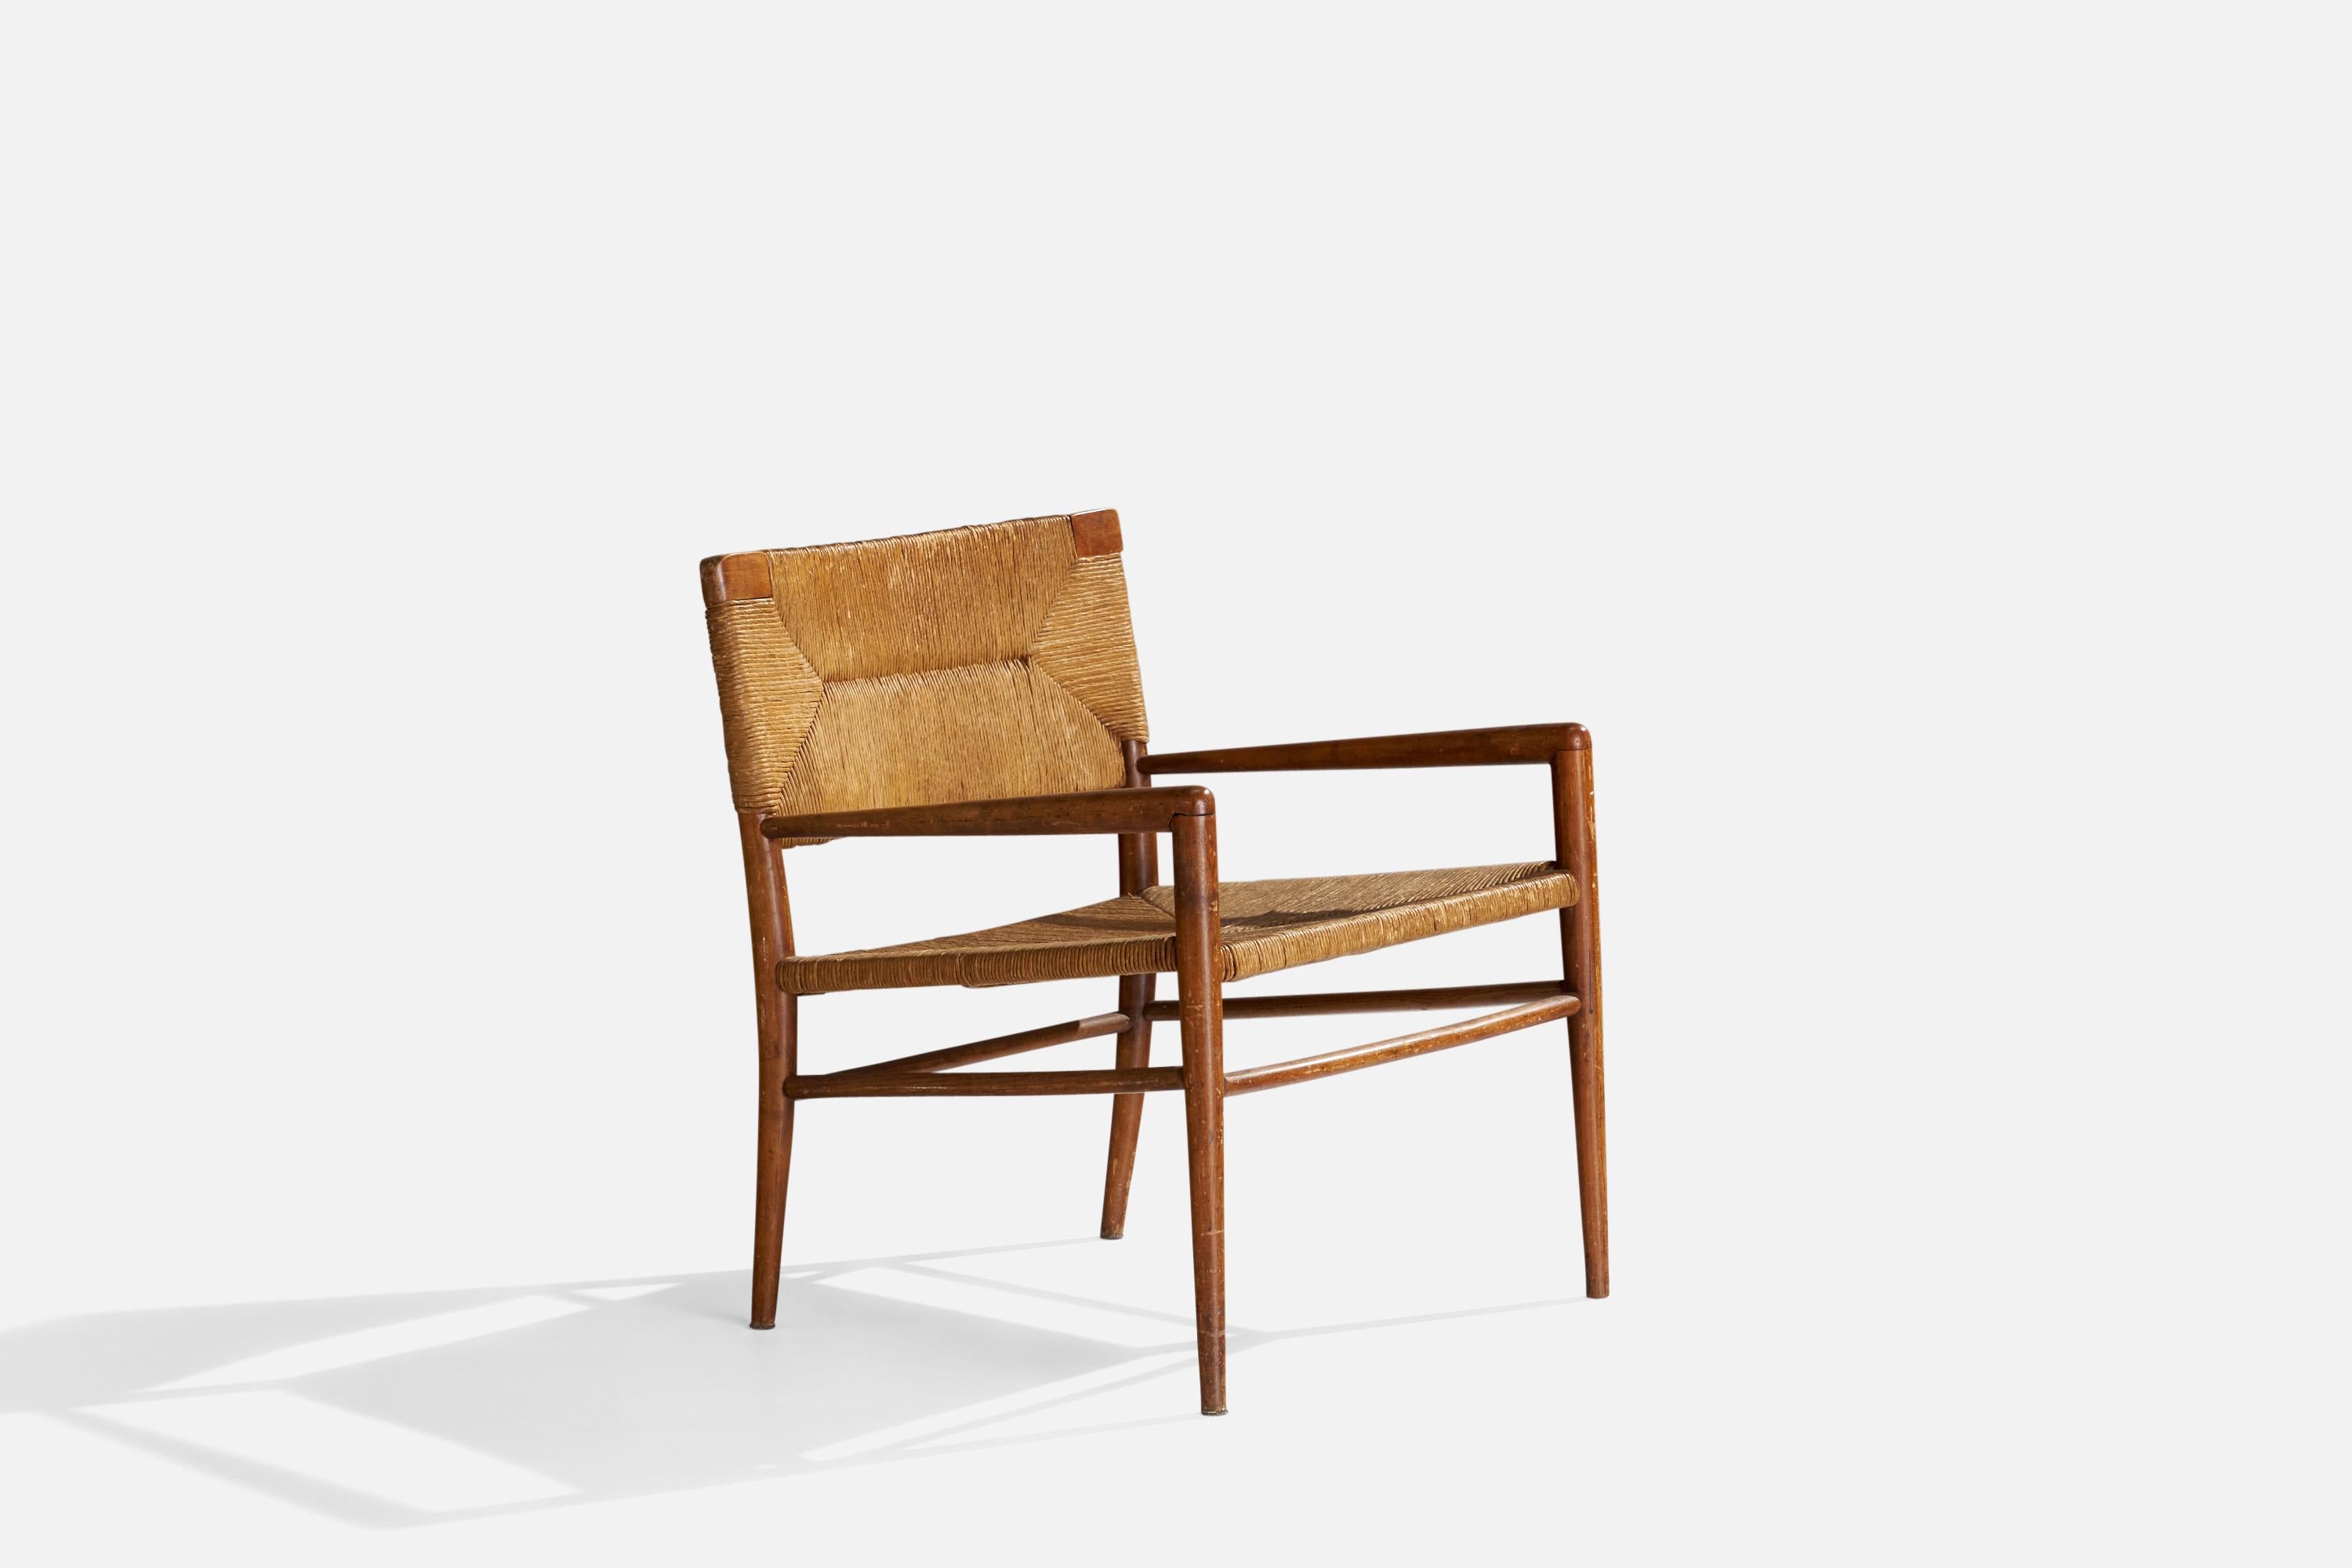 Sessel aus Holz und Papierkordeln, entworfen von Mel Smilow und hergestellt von Smilow-Thielle, um 1955.

Sitzhöhe 16